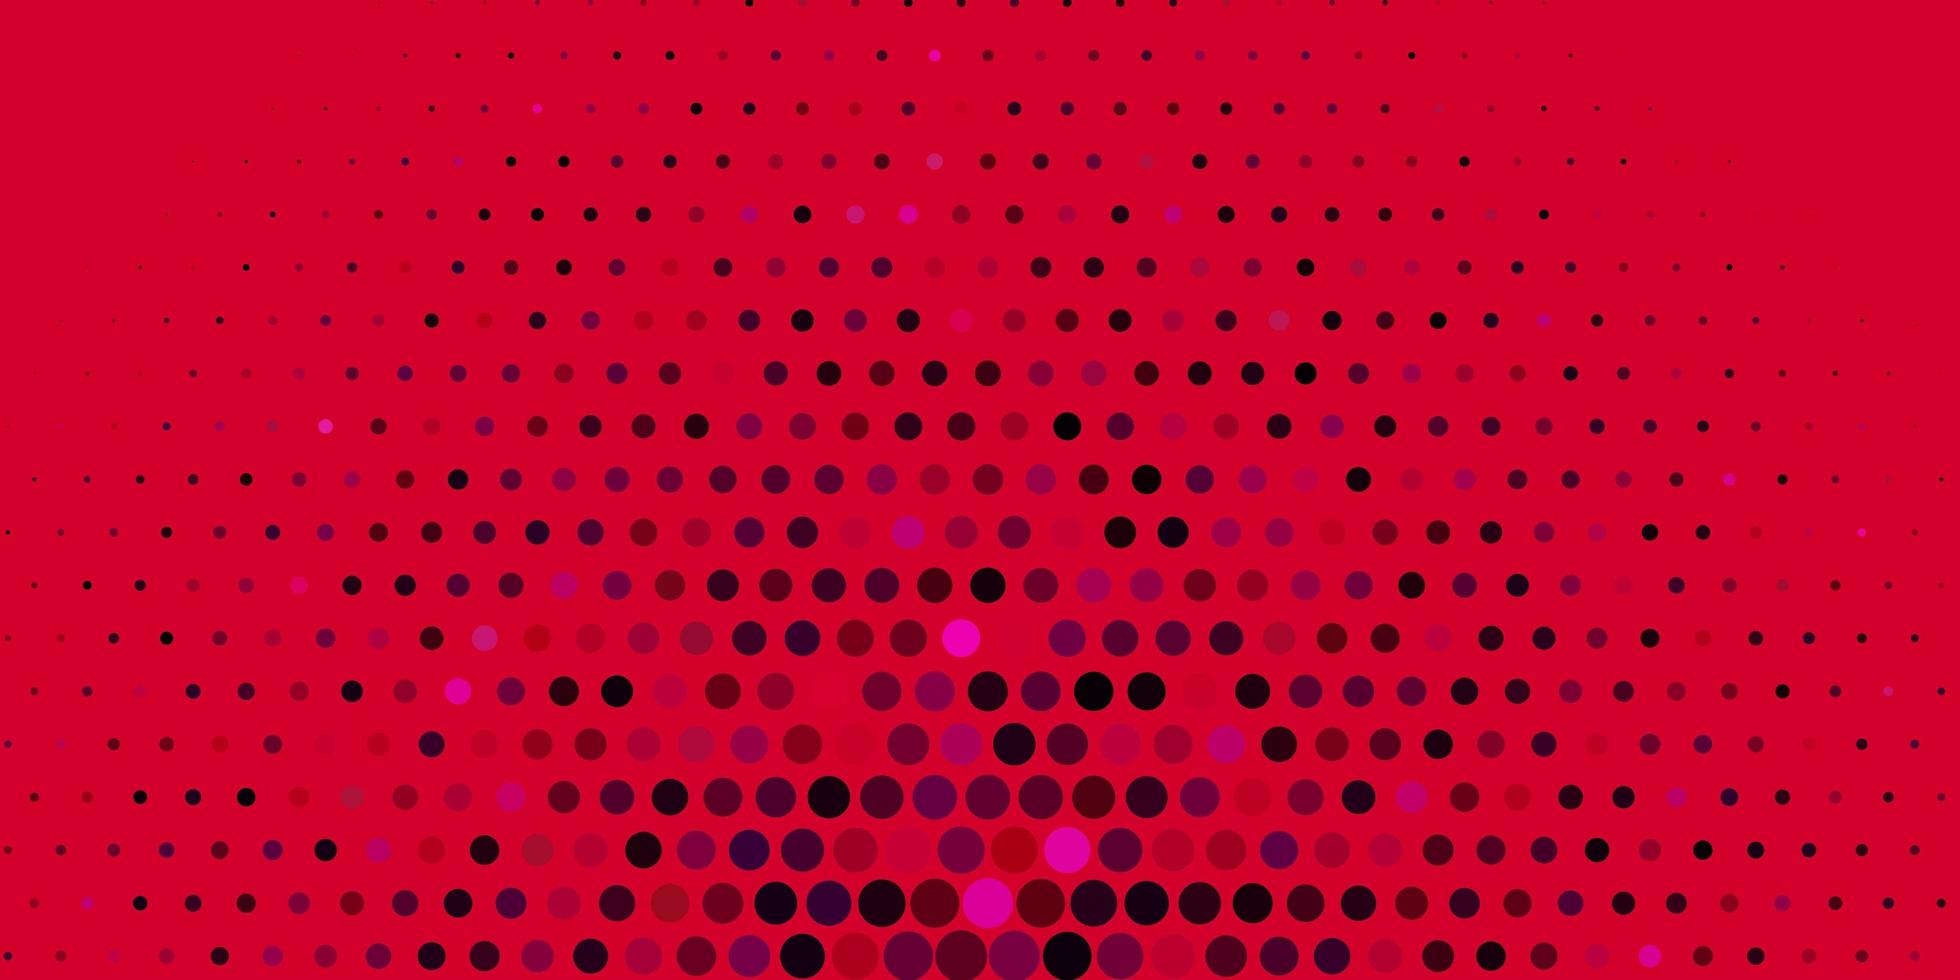 modelo de vetor rosa claro com ilustração de círculos com conjunto de padrão de esferas abstratas coloridas brilhantes para sites